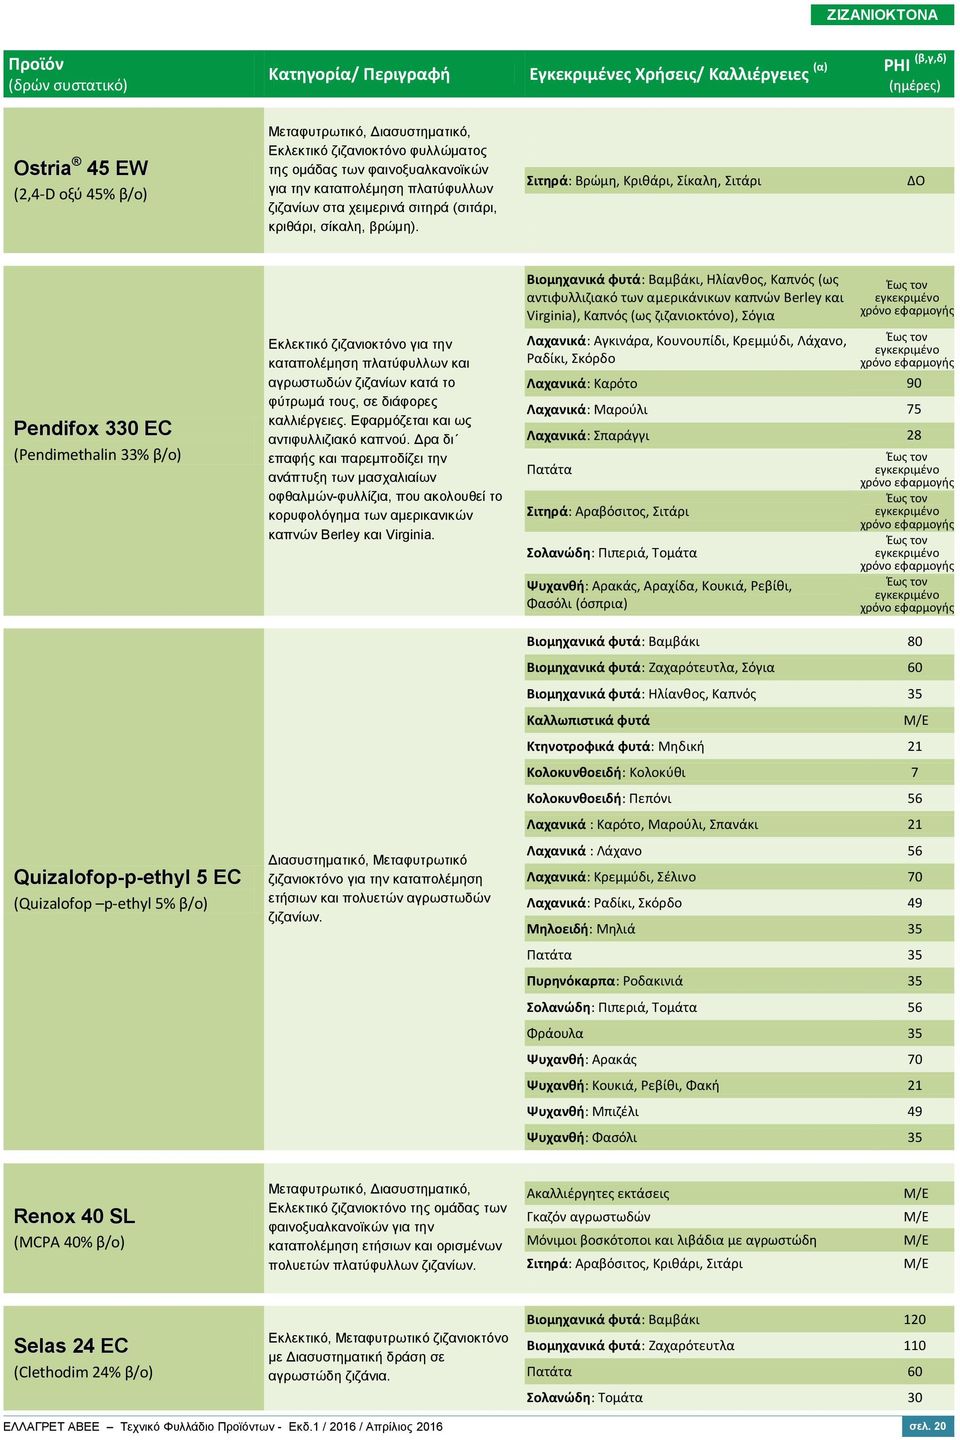 Σιτηρά: Βρώμη, Κριθάρι, Σίκαλη, Σιτάρι Pendifox 0 EC (Pendimethalin % β/ο) Quizalofop-p-ethyl 5 EC (Quizalofop p-ethyl 5% β/ο) Εκλεκτικό ζιζανιοκτόνο για την καταπολέμηση πλατύφυλλων και αγρωστωδών